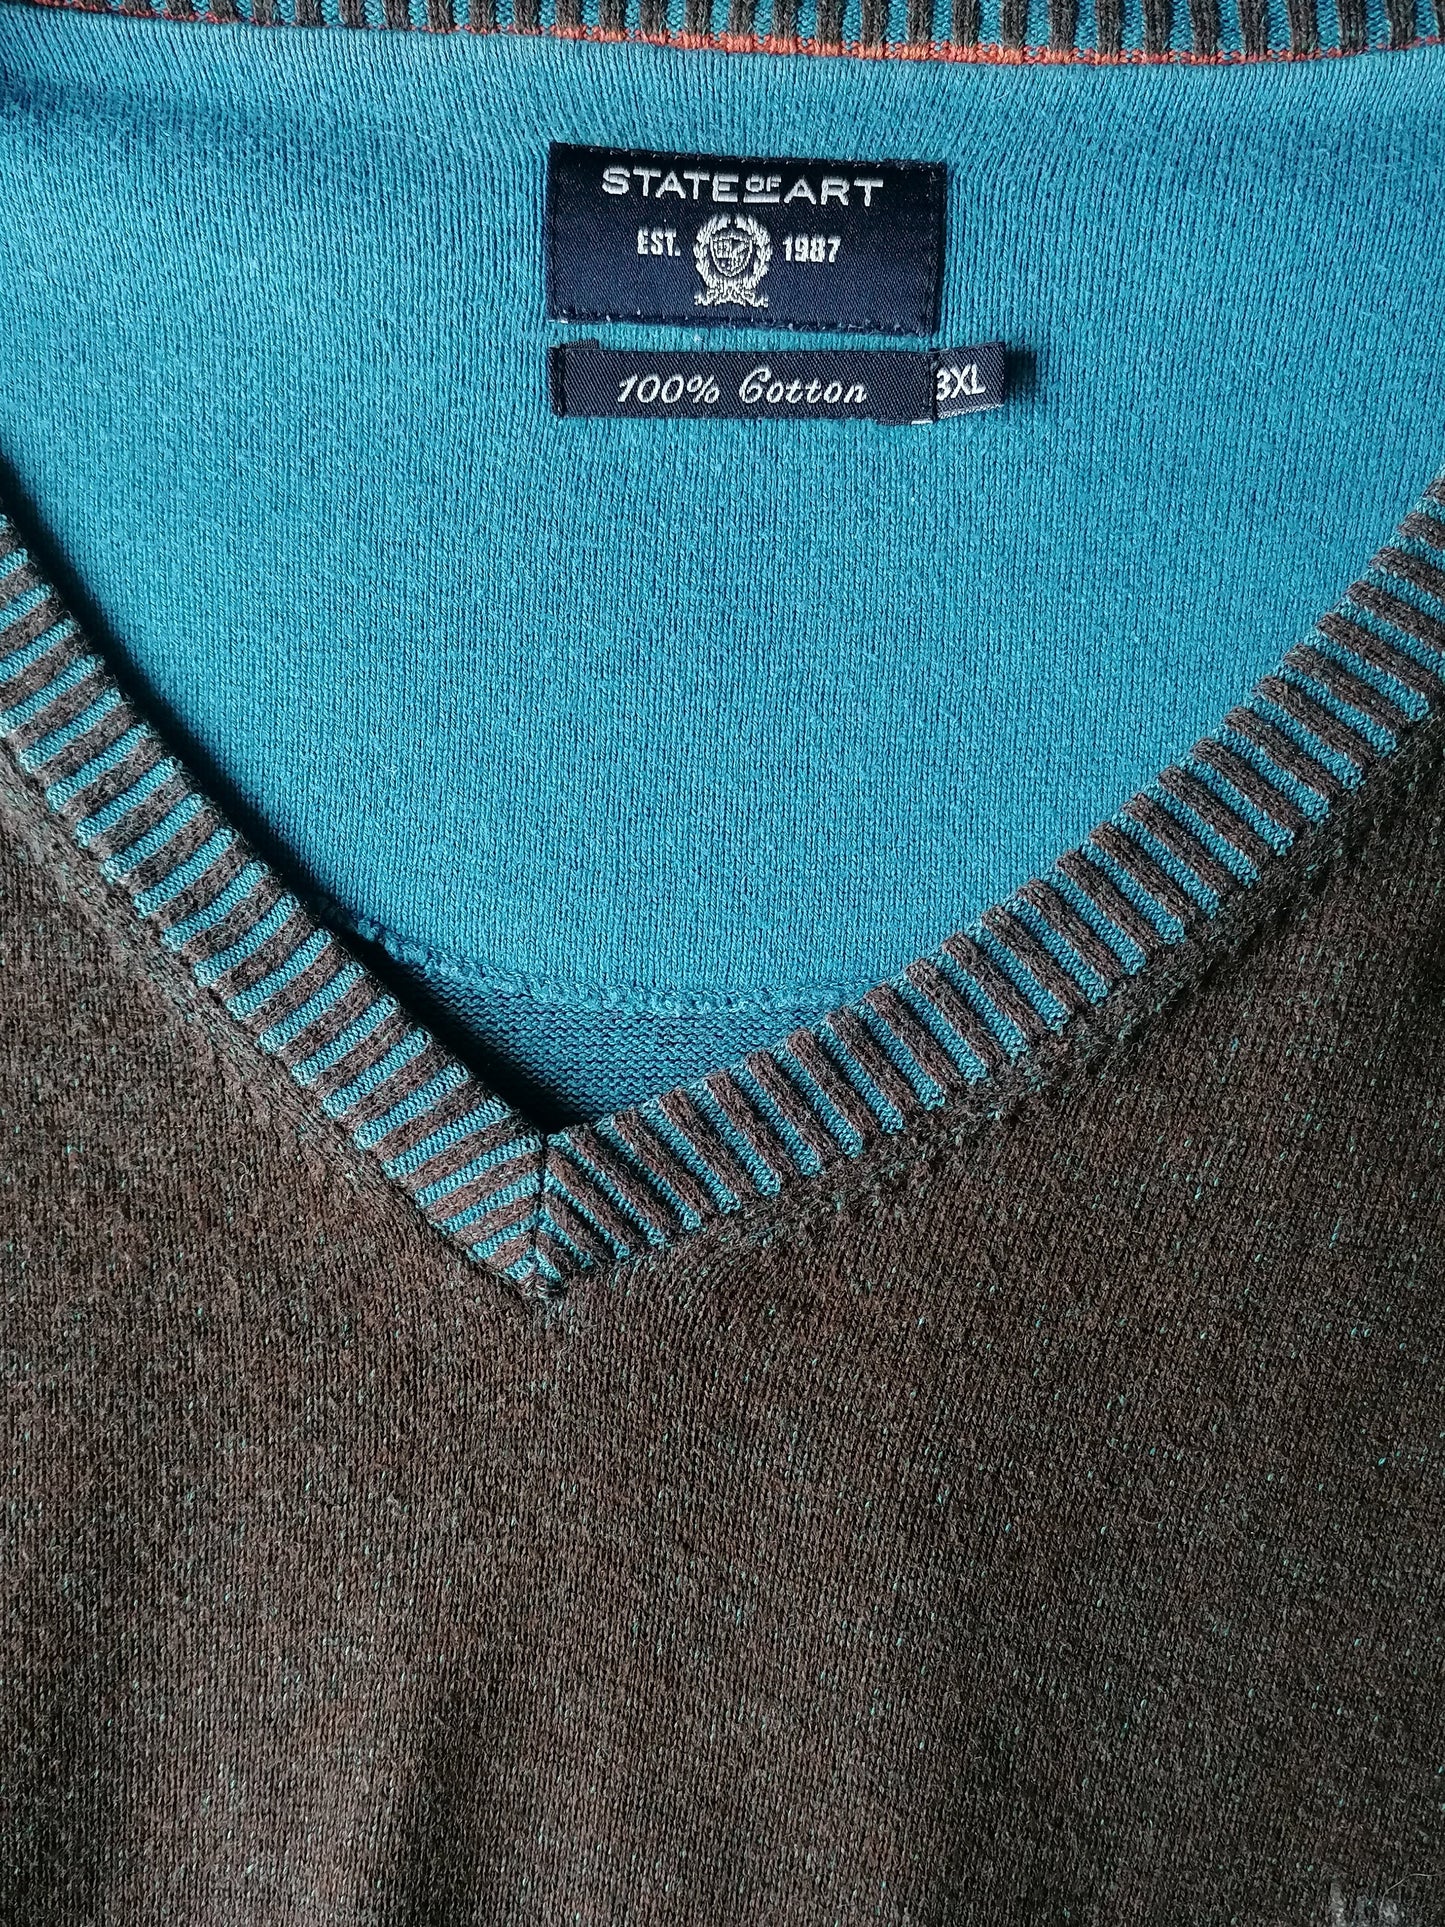 Estado del suéter de arte. Cuello en V. Marrón azul mezclado. Tamaño xxxl / 3xl.